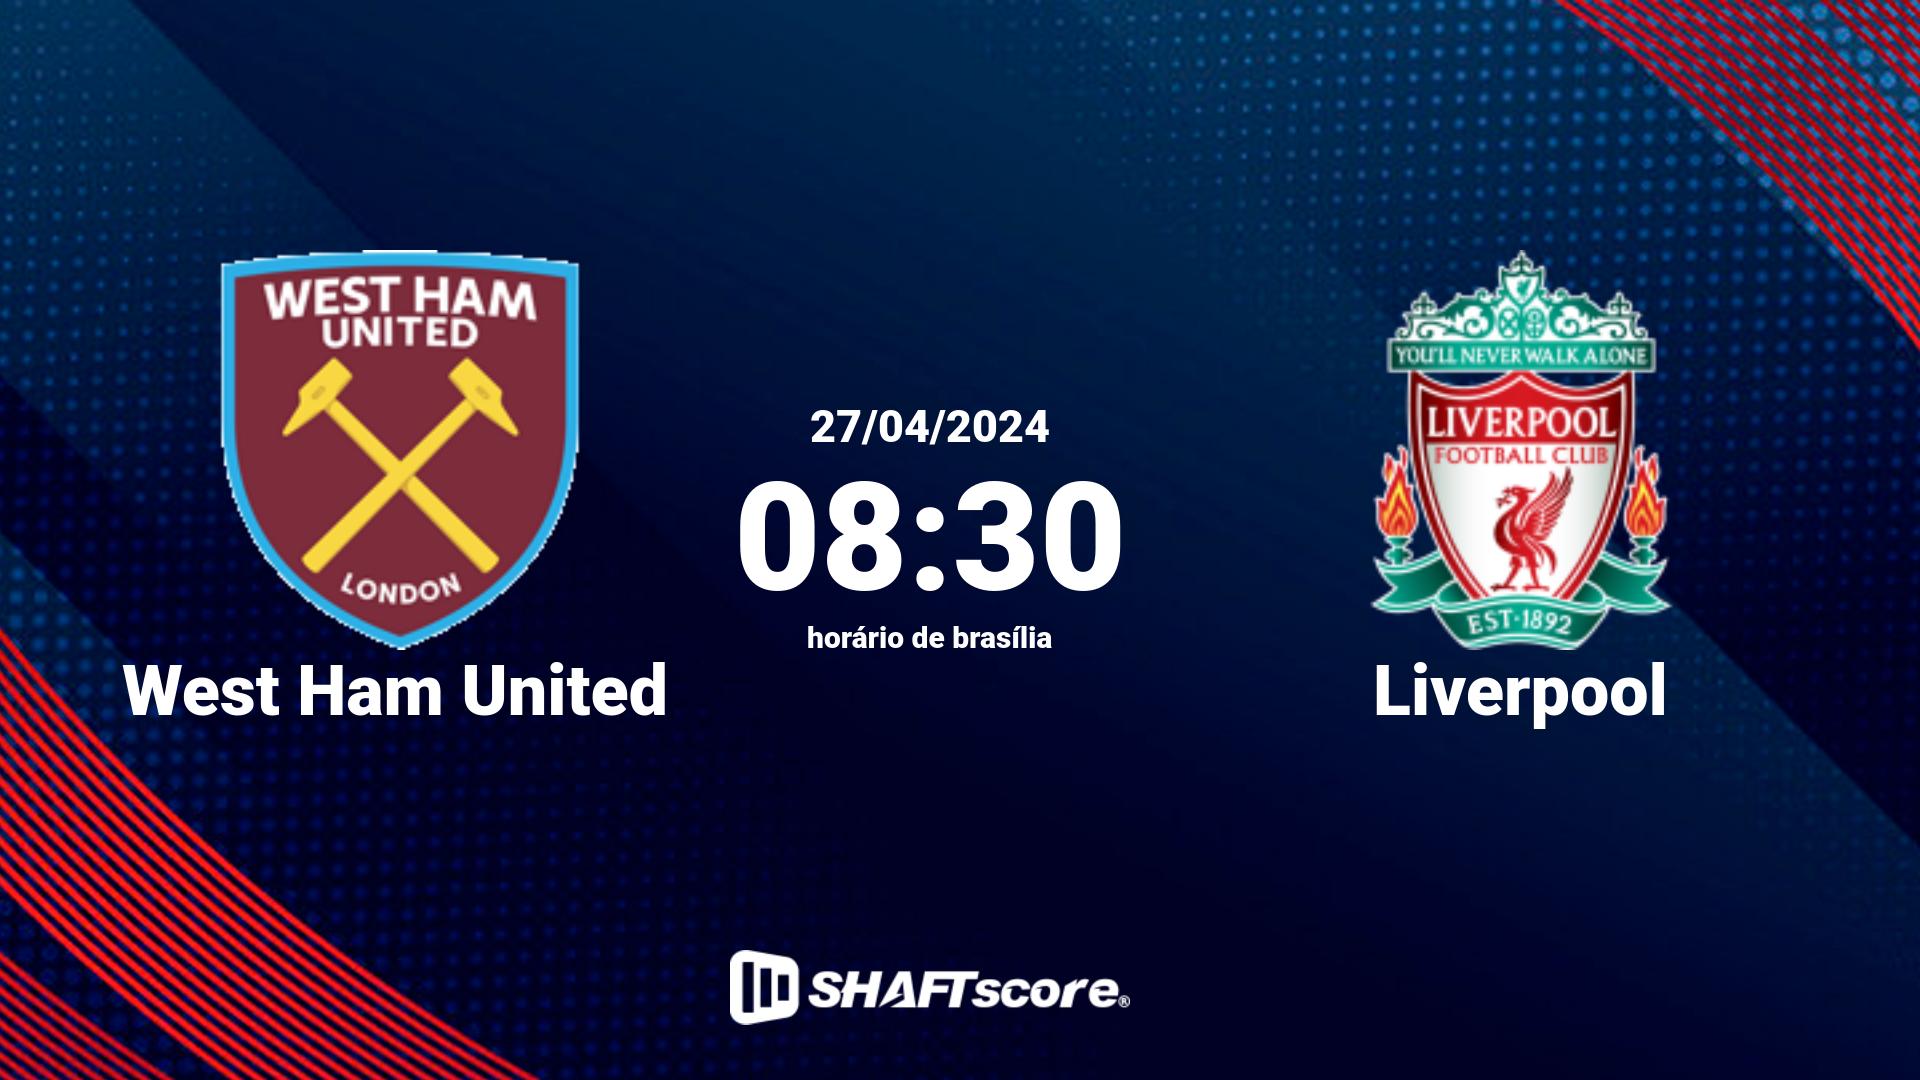 Estatísticas do jogo West Ham United vs Liverpool 27.04 08:30